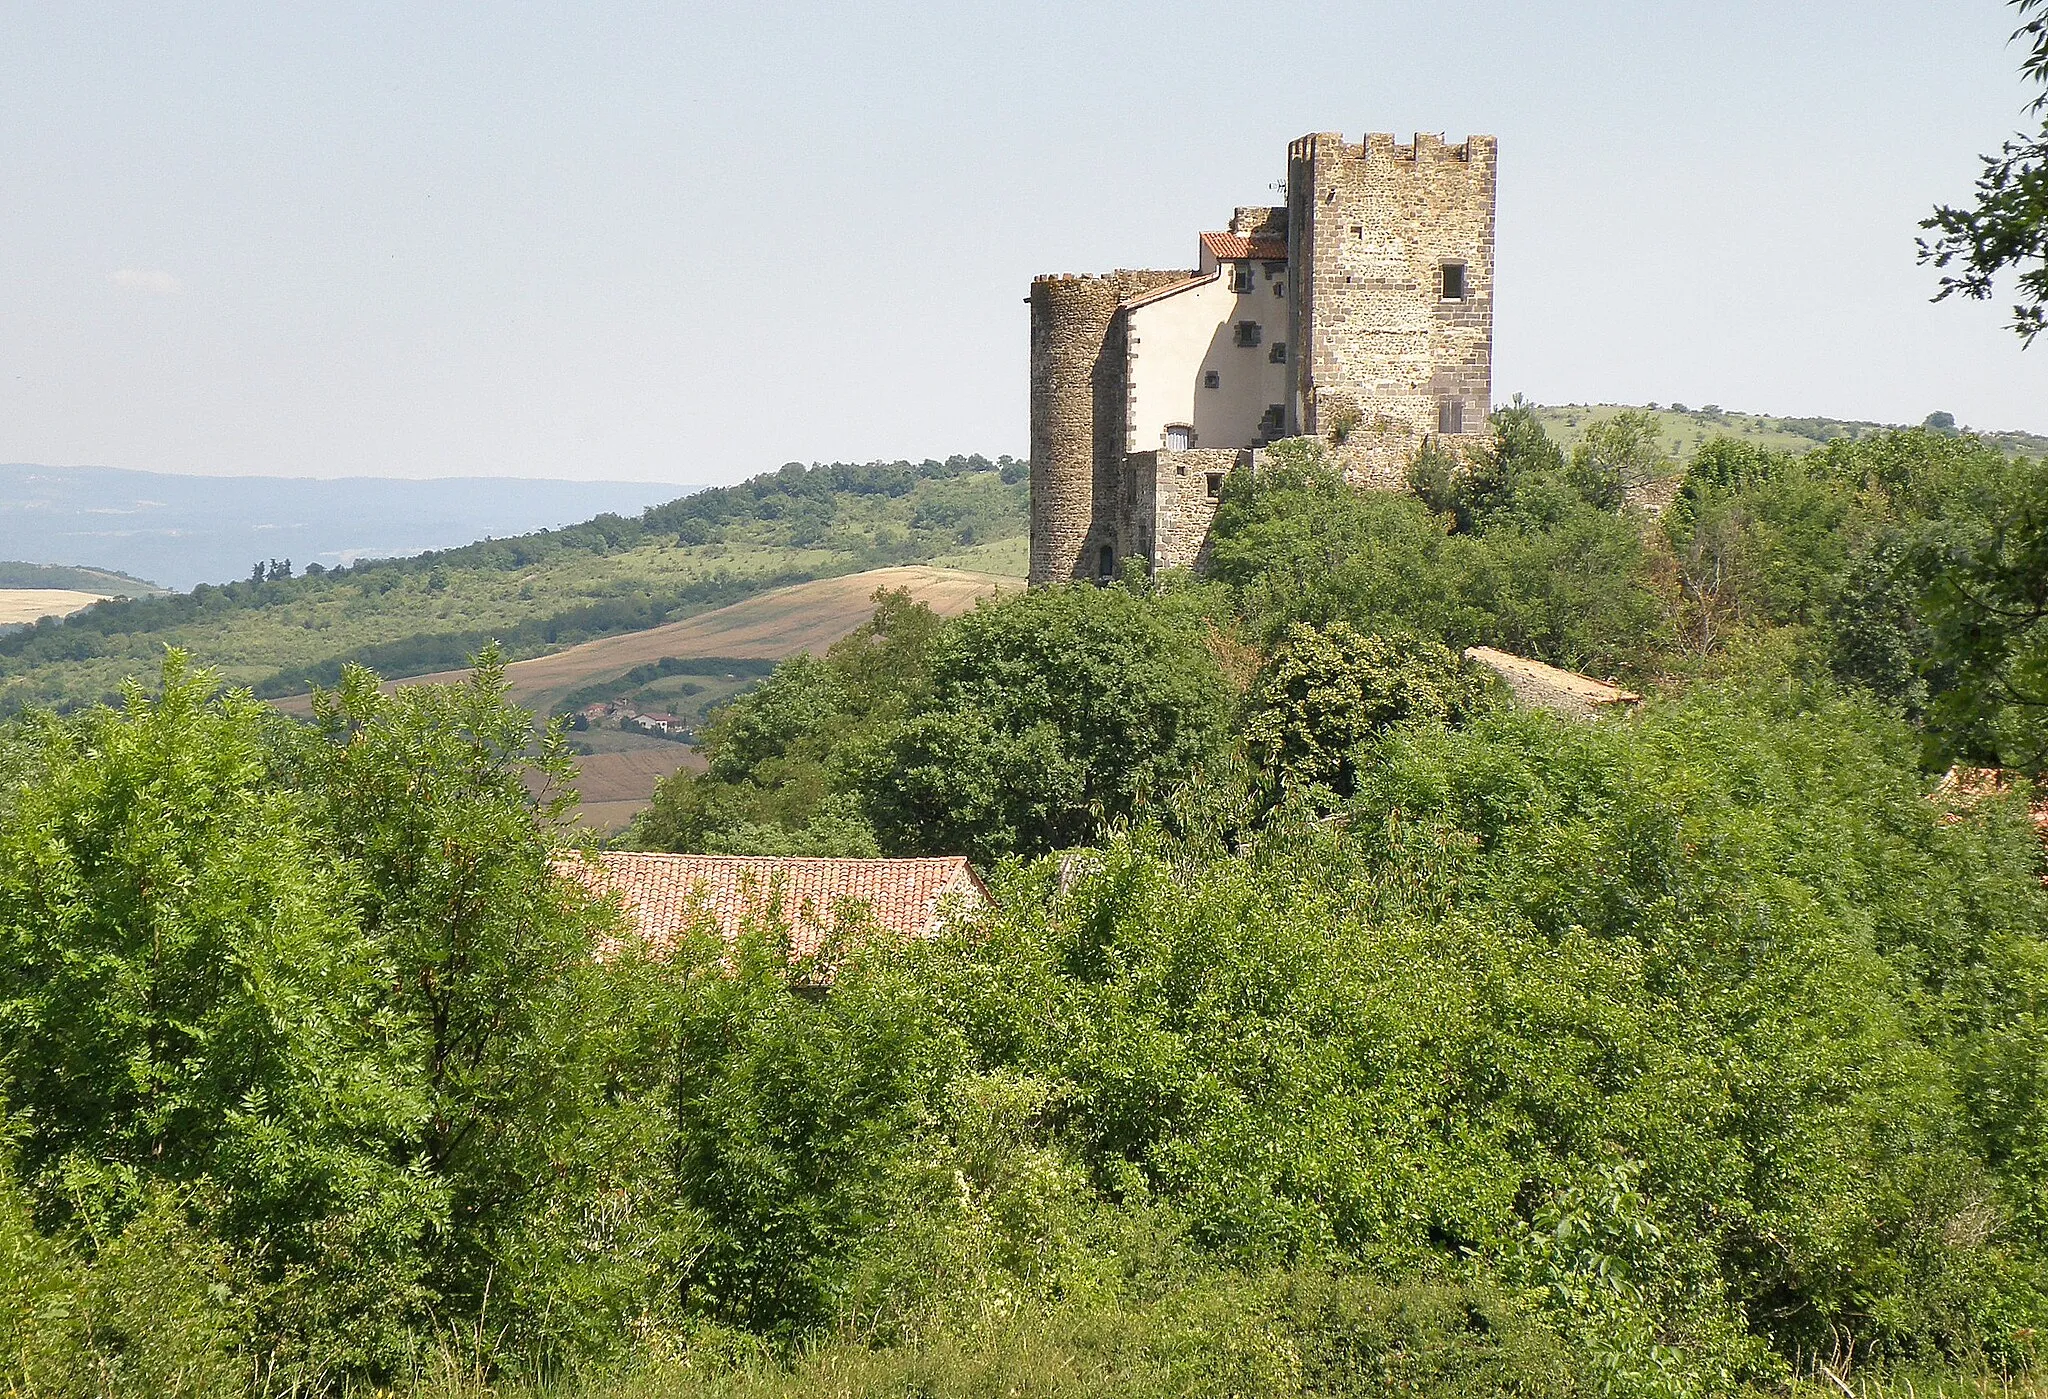 Photo showing: Montaigut-le-Blanc, comm. du Puy-de-Dôme (France, région Auvergne). Château médiéval, vu depuis la départementale 639 (route d'Olloix). Coup d'oeil vers le sud-est.